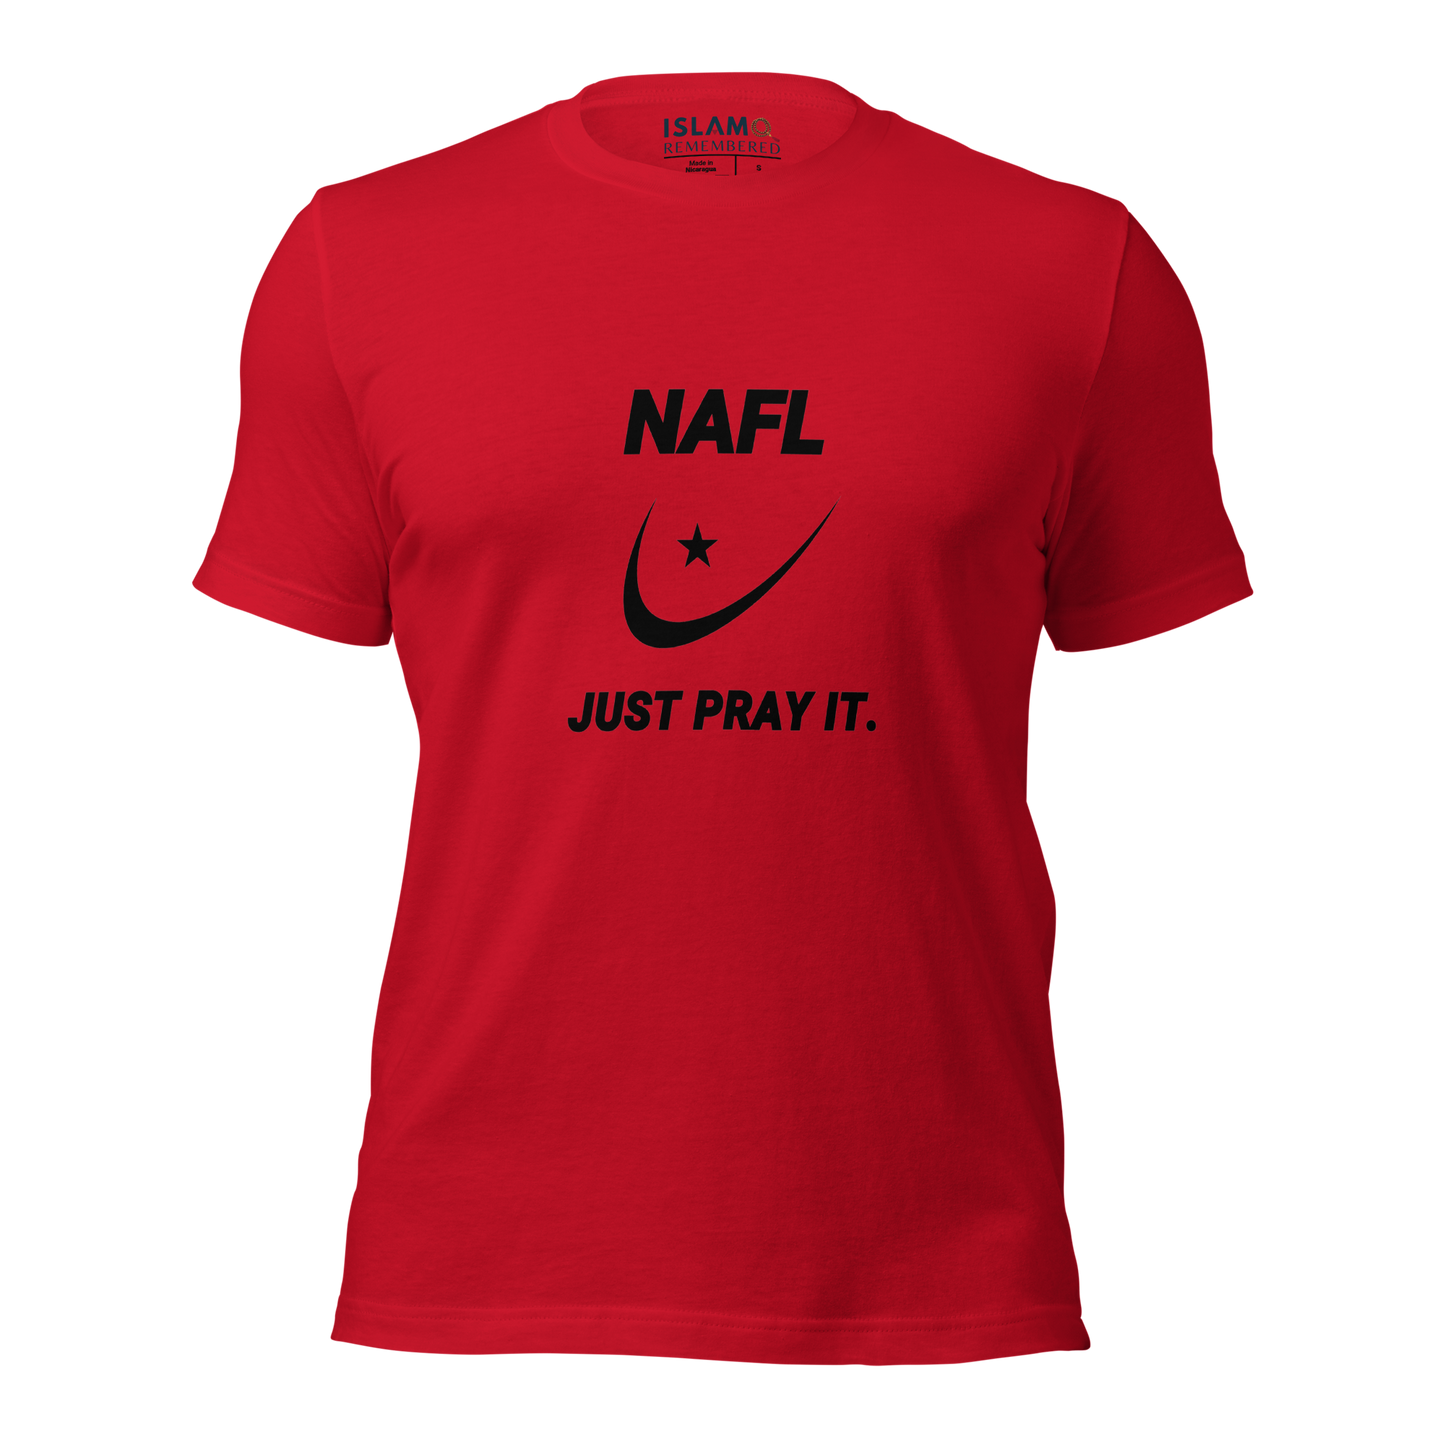 ADULT T-Shirt - NAFL JUST PRAY IT w/ Logo - Black